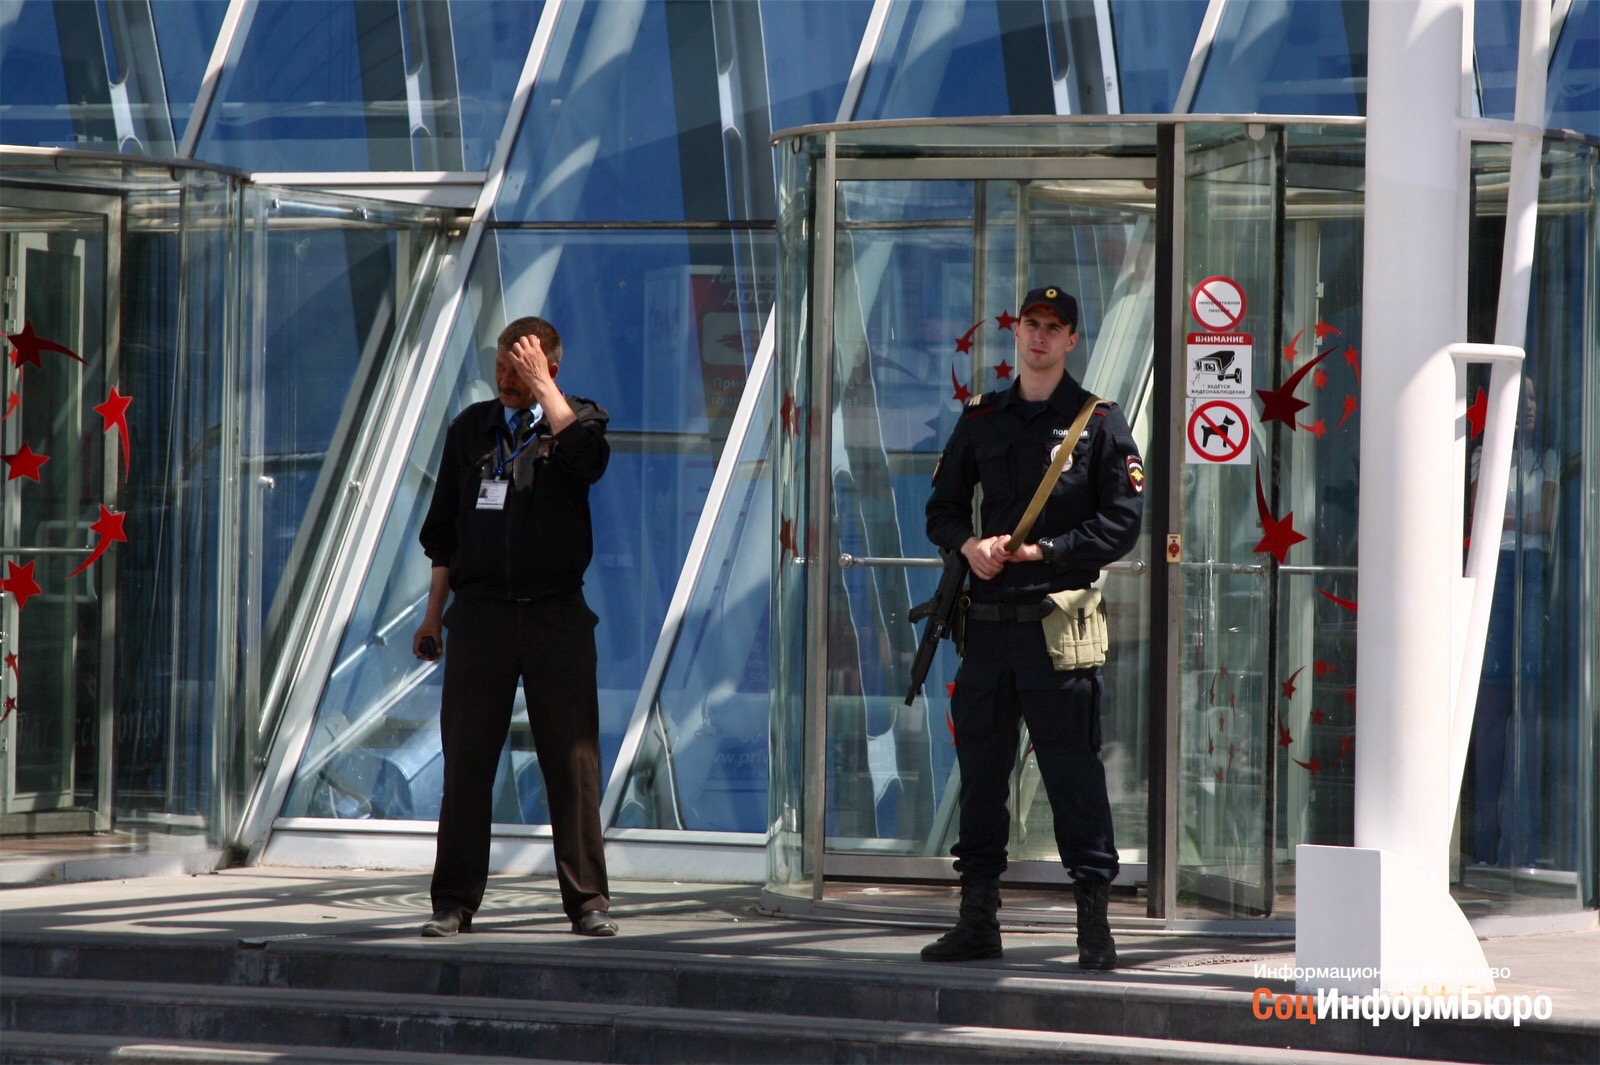 Охрана БЦ. Охранник в бизнес центр. Охрана бизнес центров в Москве.